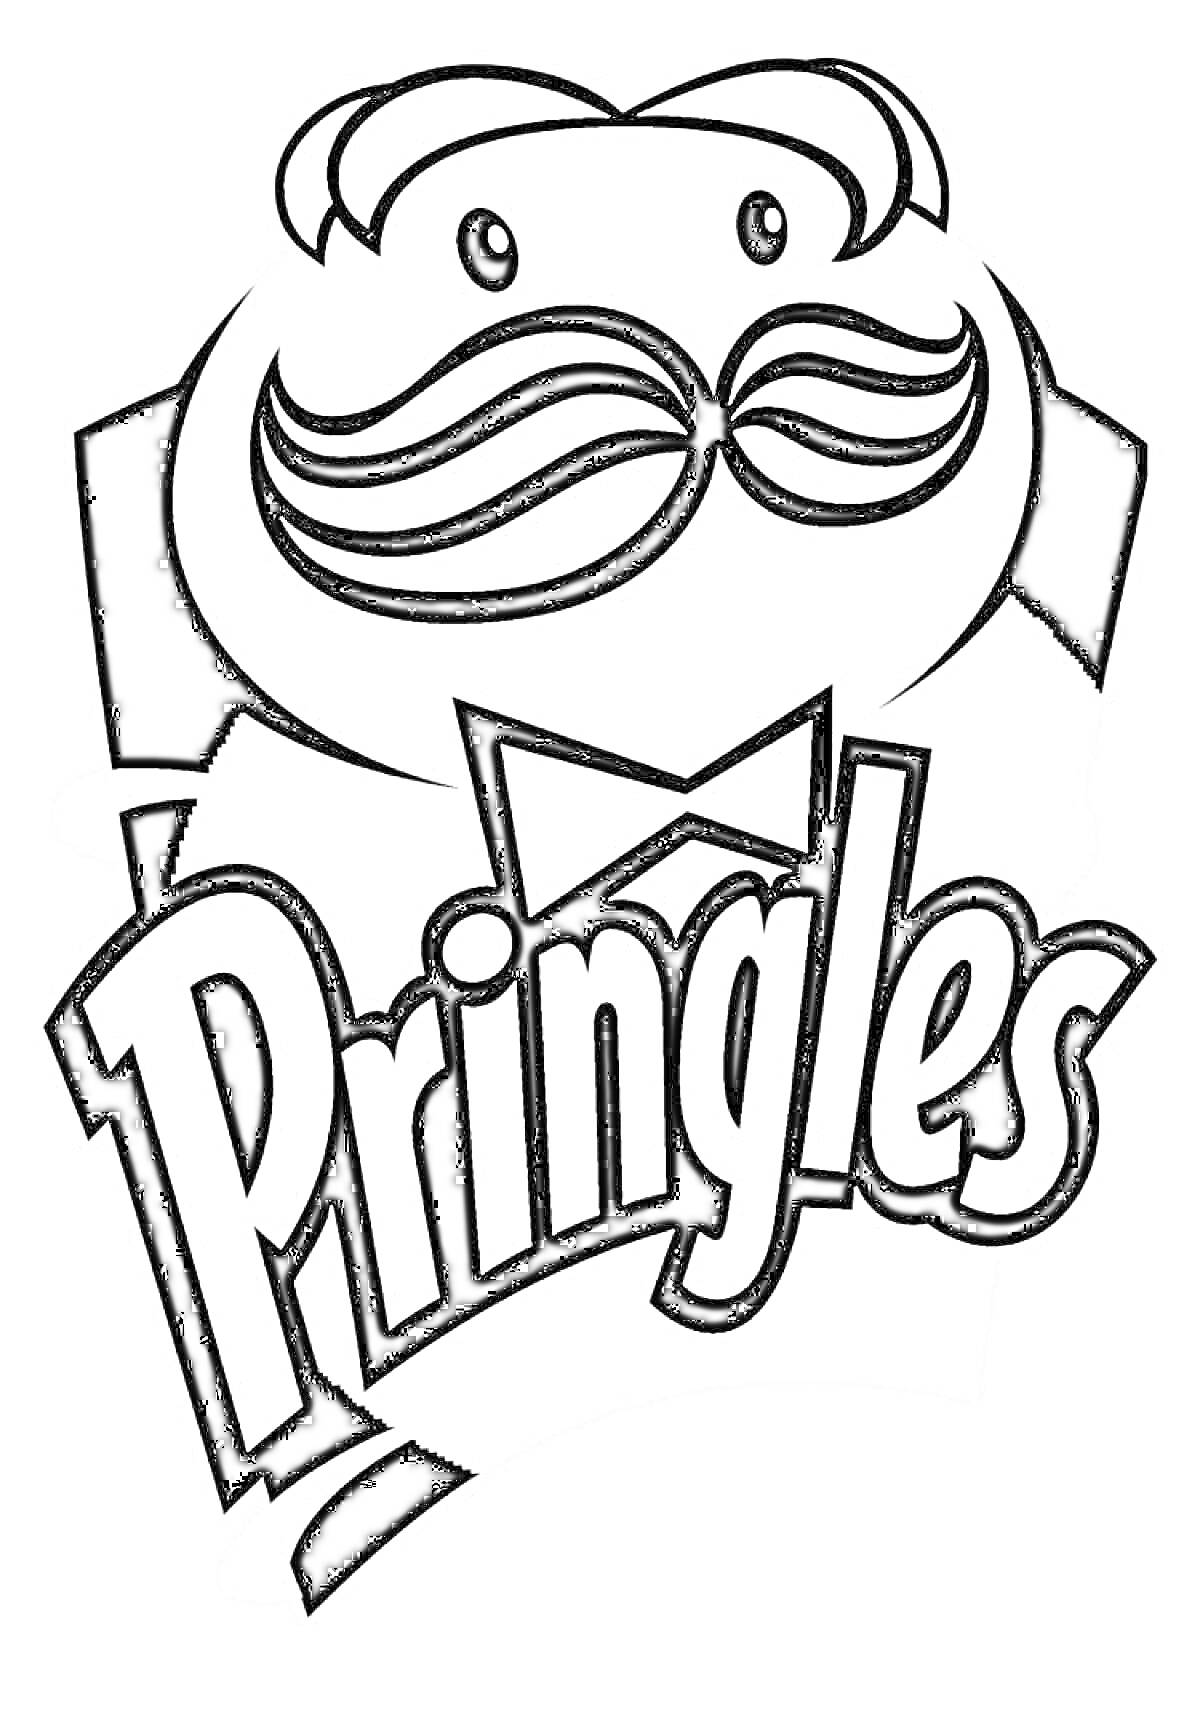 РаскраскаЛоготип Pringles с изображением головы мужчины с усами и бантом